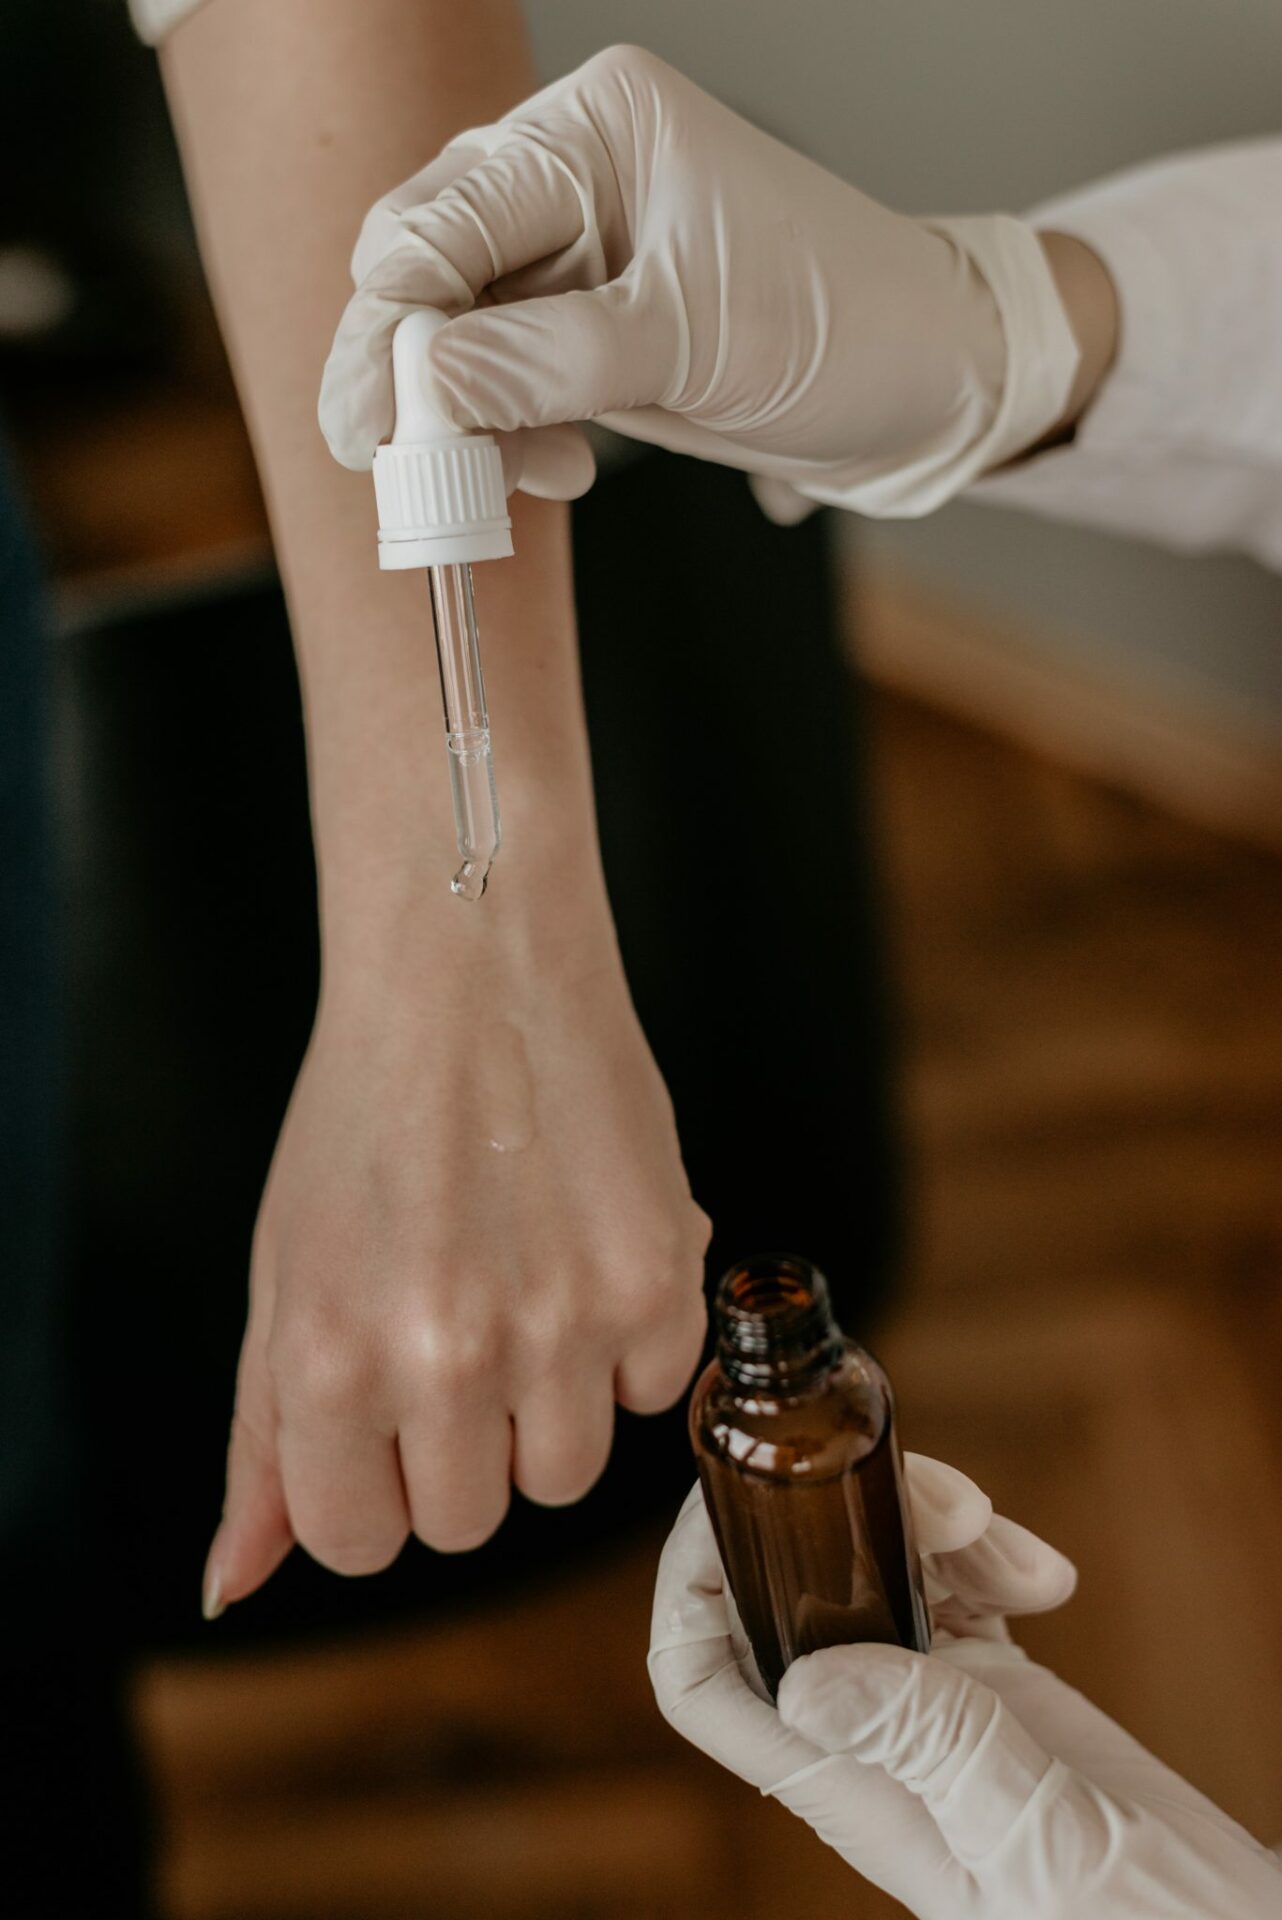 Hautpflege Allergietest auf Arm Foto von Amplitude Magazin auf Unsplash